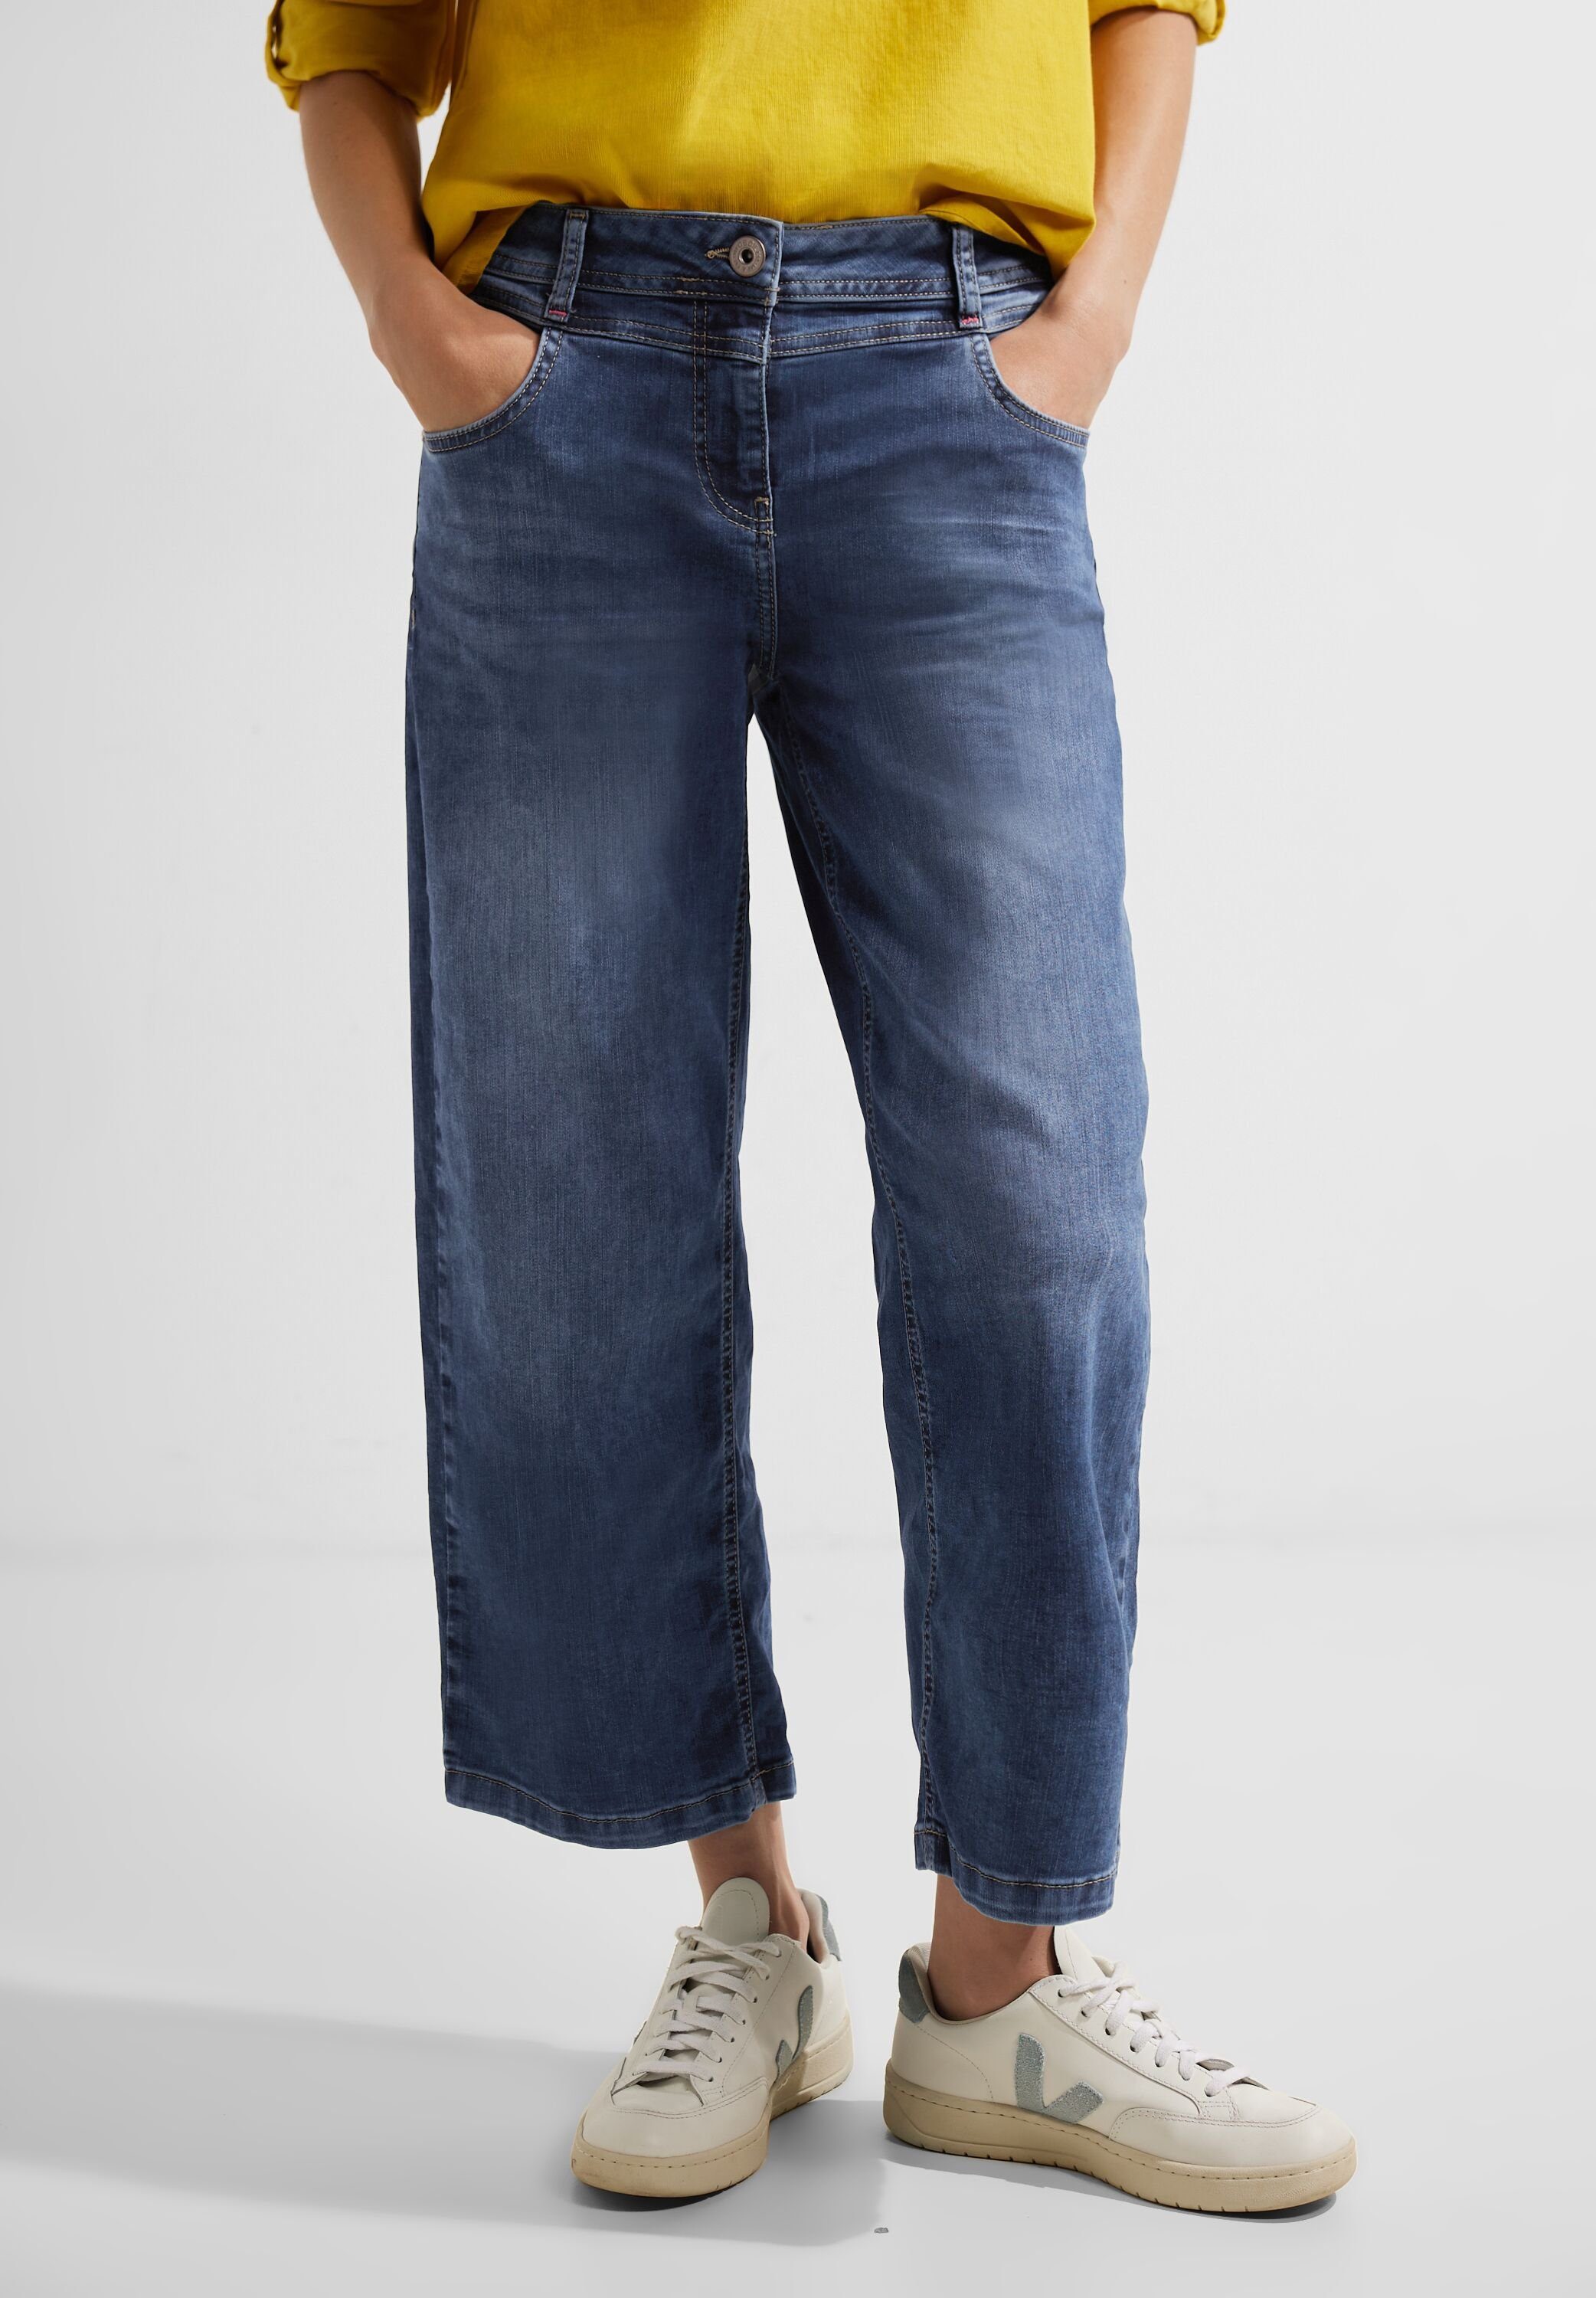 Cecil Loose-fit-Jeans mit Waschung, Maße 66 24 cm ca.: Größe cm, 26/26 Innenbeinlänge Fussweite bei